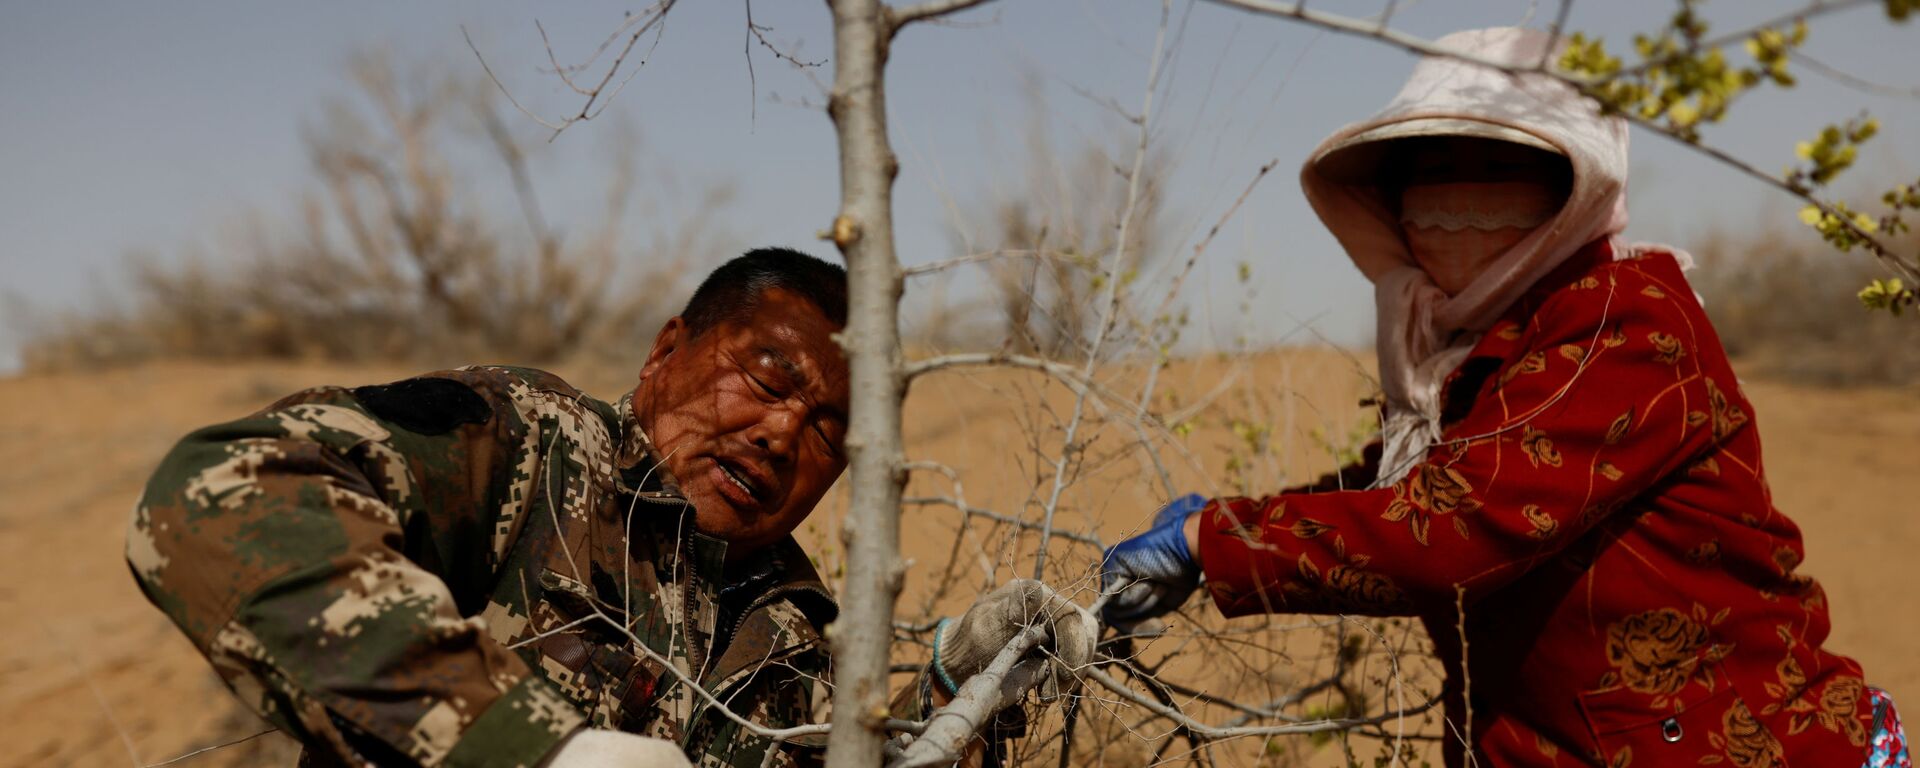 Los lugareños cortan un árbol plantado en el borde del desierto de Gobi, en la provincia de Gansu.  - Sputnik Mundo, 1920, 04.06.2021